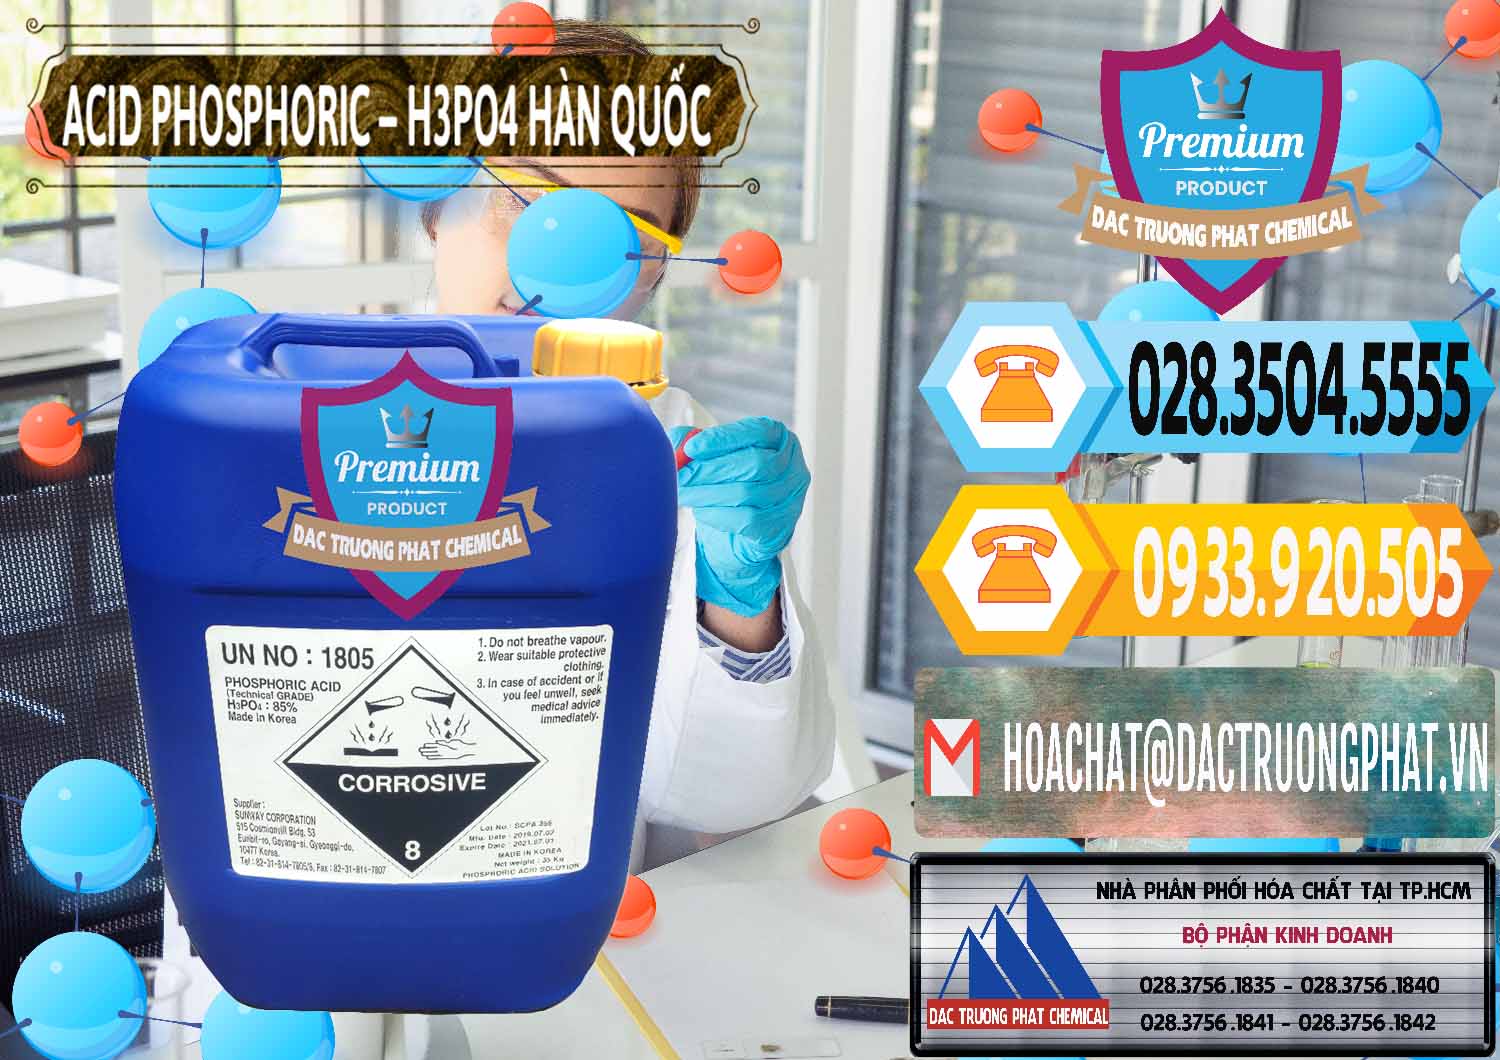 Đơn vị chuyên bán _ phân phối Acid Phosphoric – H3PO4 85% Can Xanh Hàn Quốc Korea - 0016 - Công ty chuyên bán & phân phối hóa chất tại TP.HCM - hoachattayrua.net